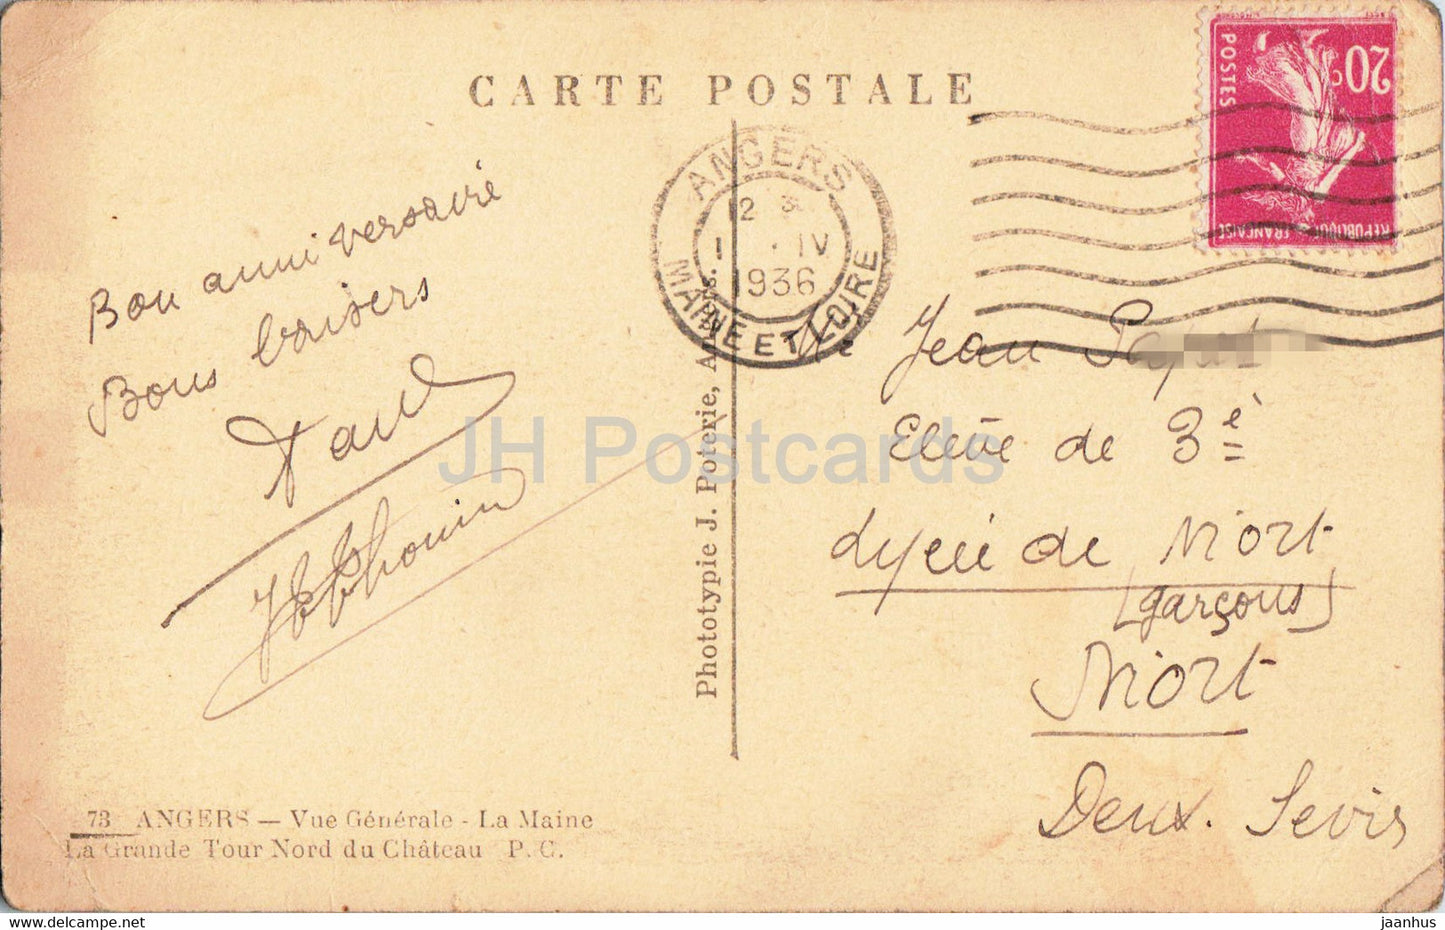 Angers - Vue Générale - La Maine - La Grande Tour Nord du Chateau - carte postale ancienne - 1936 - France - occasion